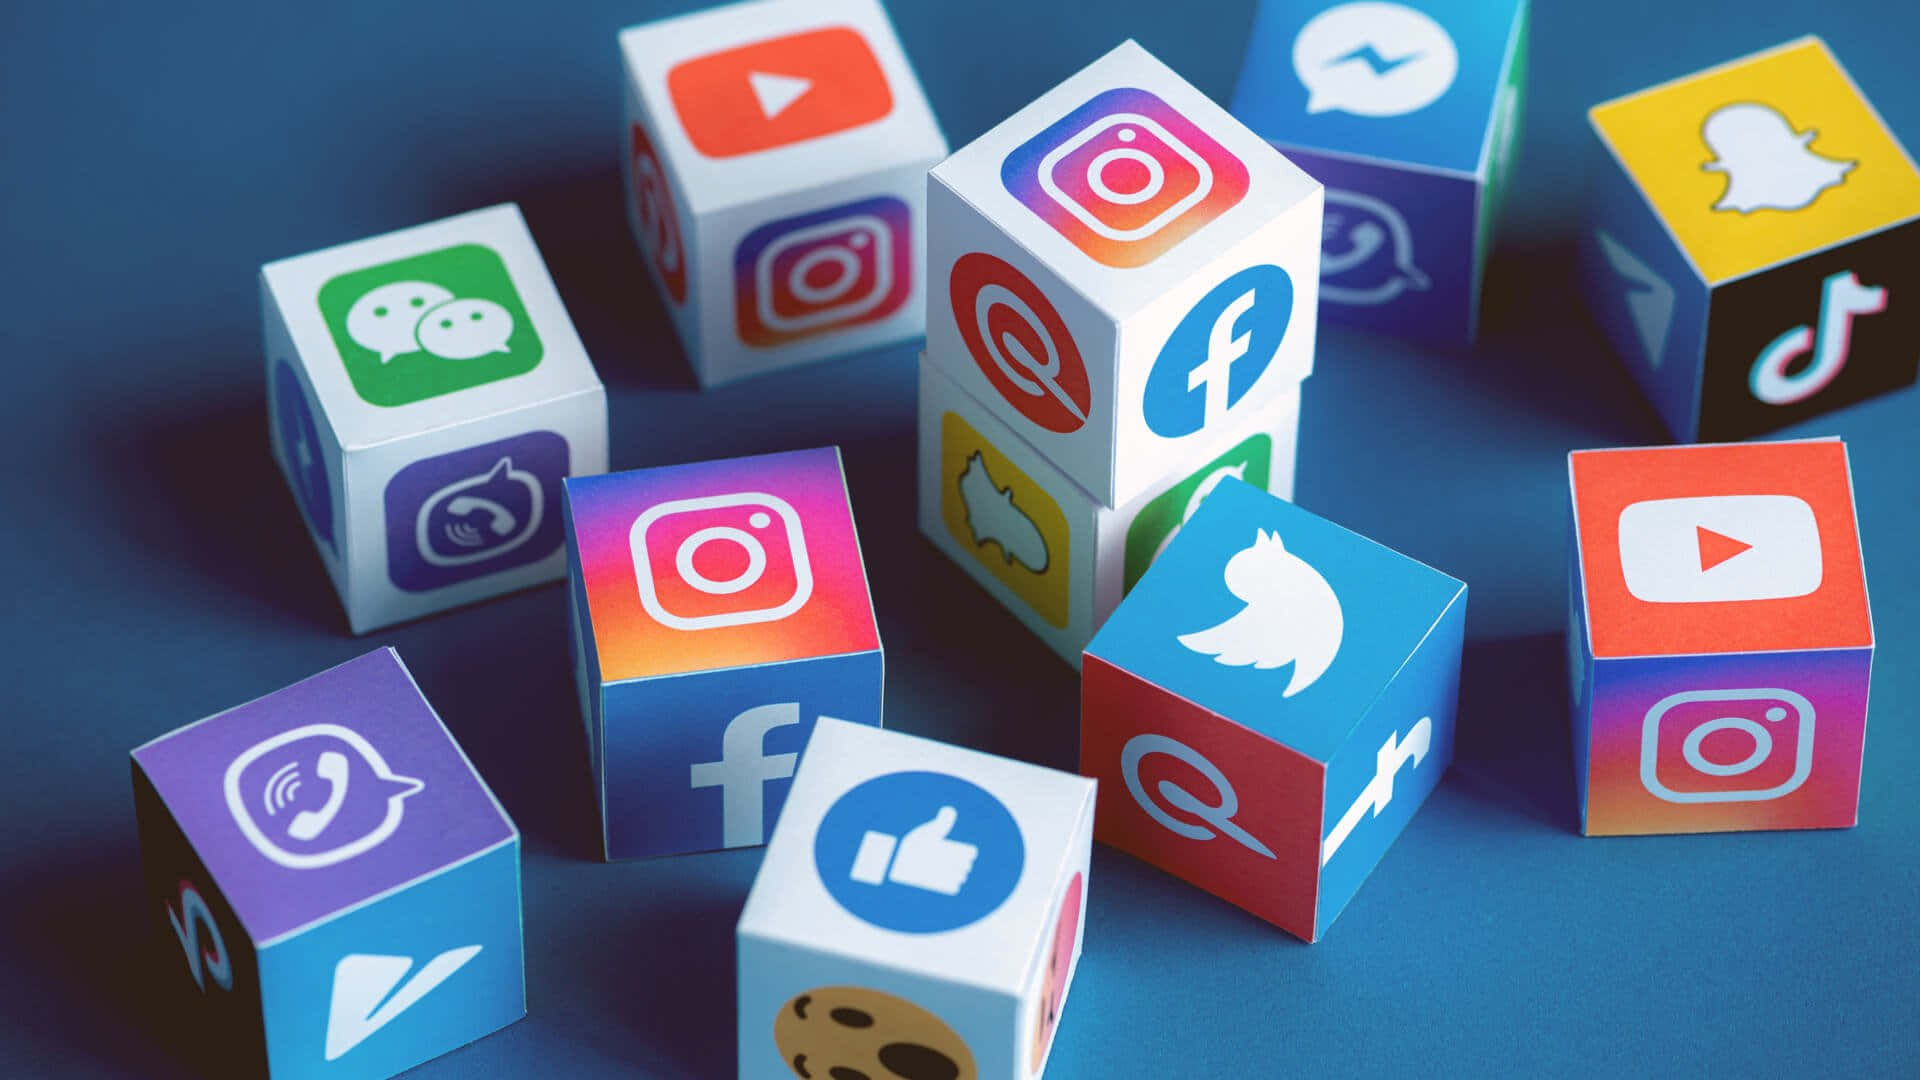 Social Media Icons Wallpaper